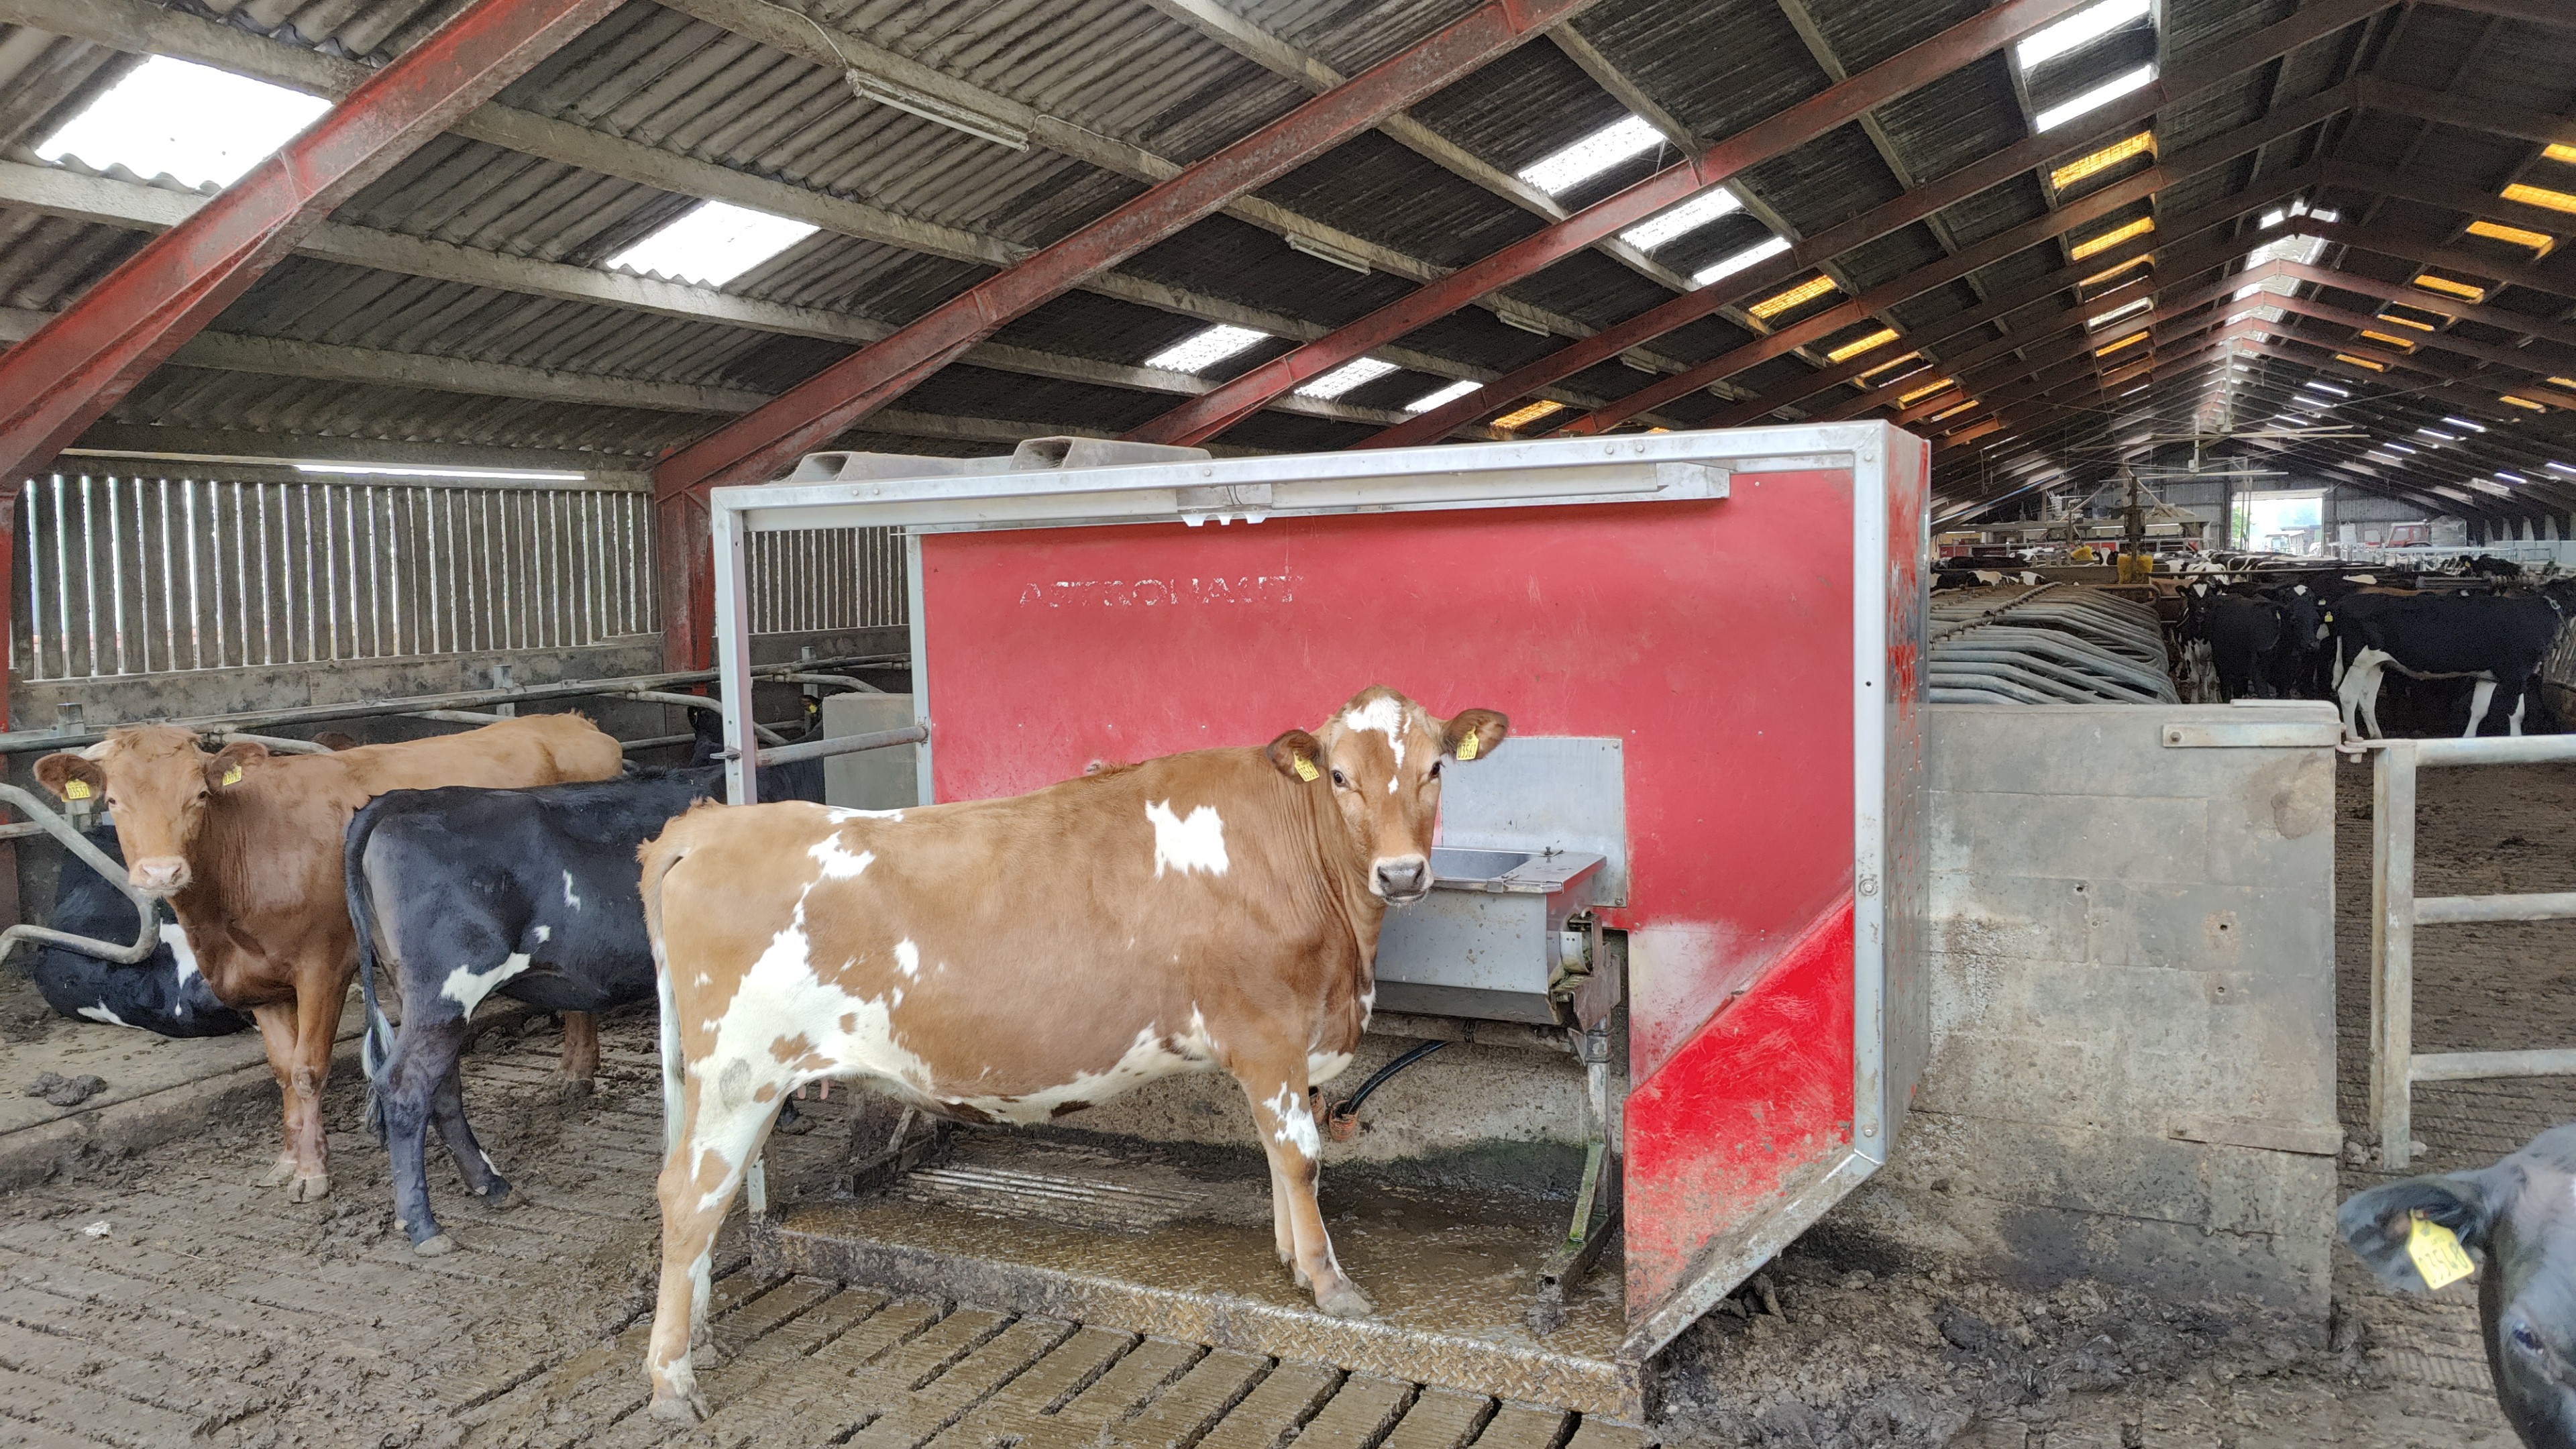 Die alte, gebrauchte lehre Lely-Melkroboter steht auf den Spalten des Stalls mit einer Trinkwanne darin, damit sich die Kühe daran gewöhnen können, hineinzugehen.